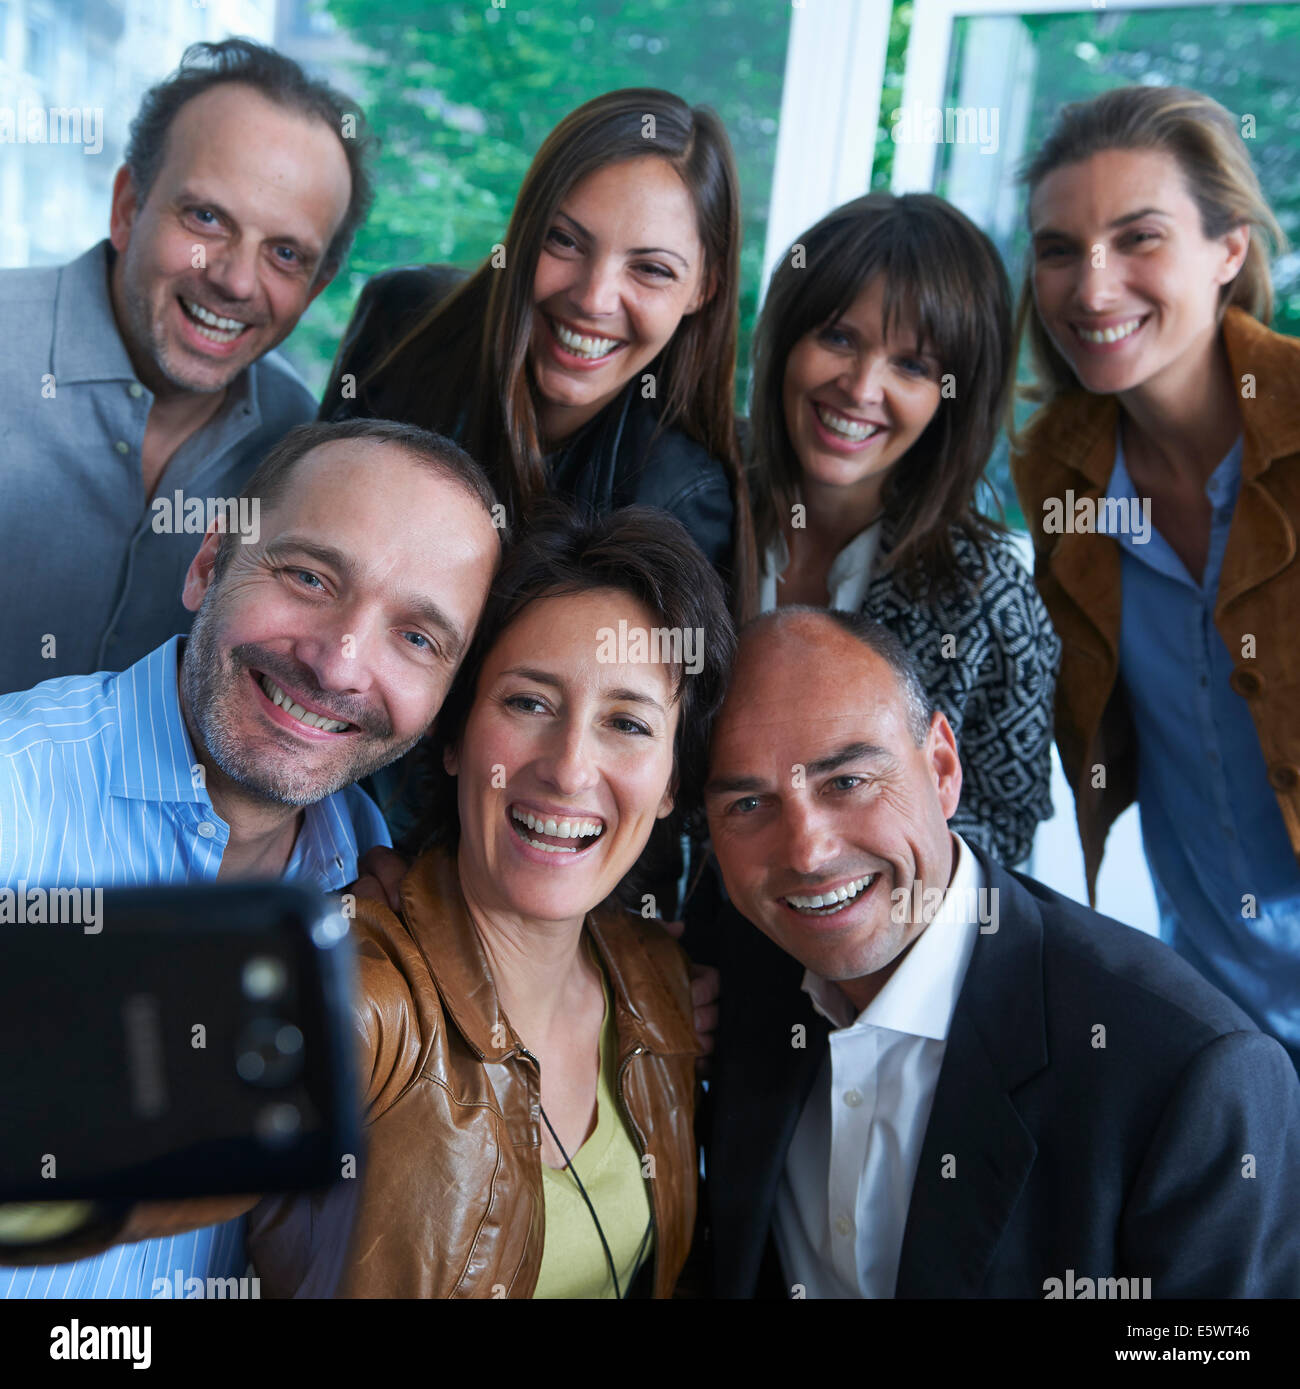 Groupe de personnes taking self portrait photograph Banque D'Images